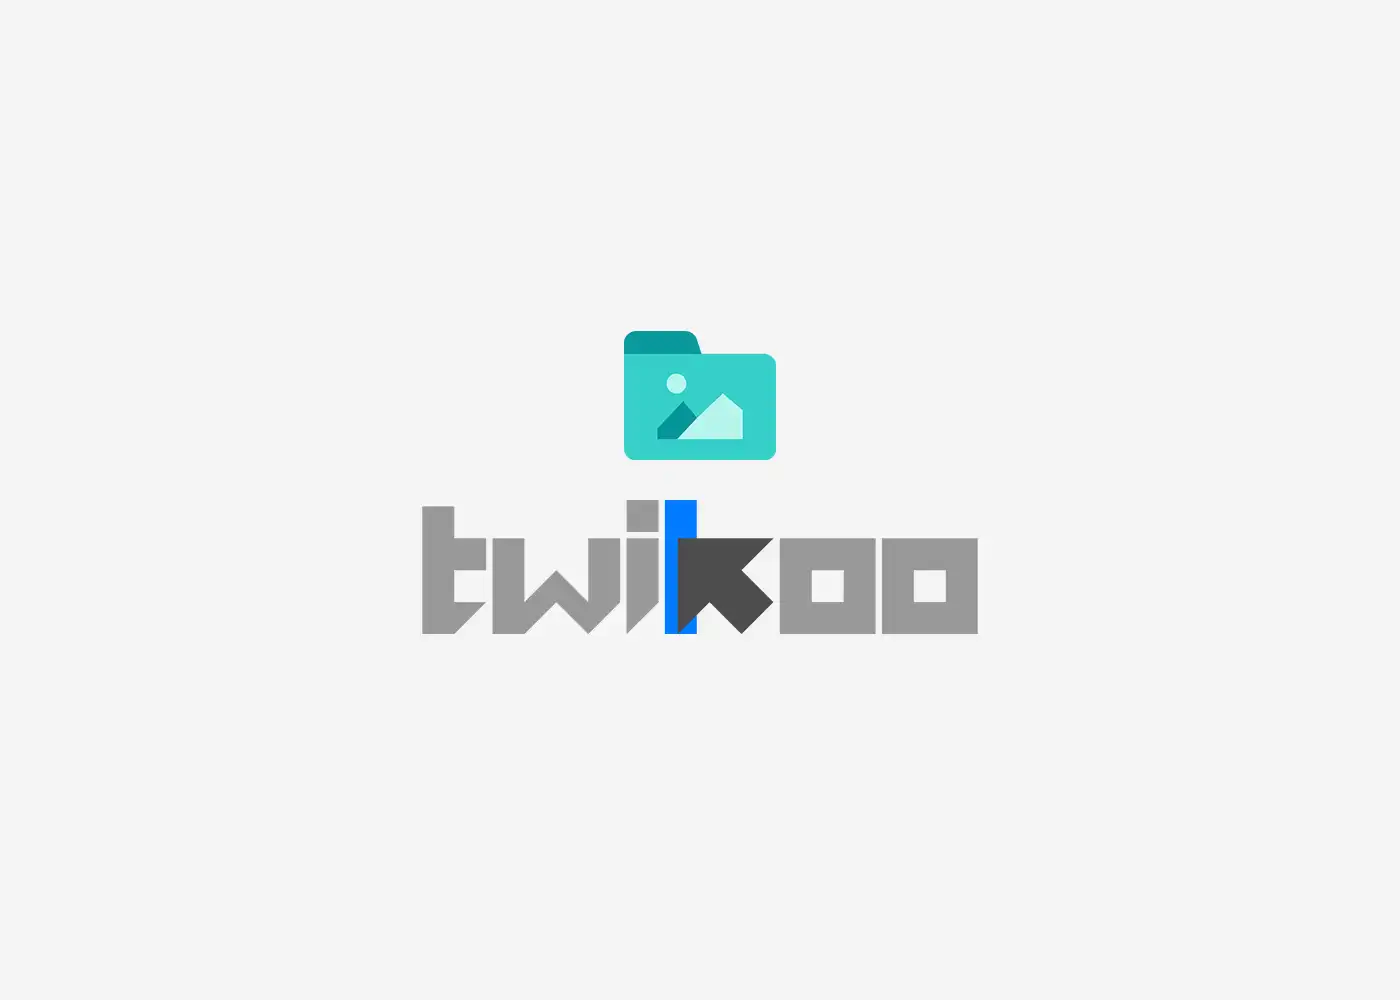 Twikoo 通过私有部署兰空图床实现图片上传